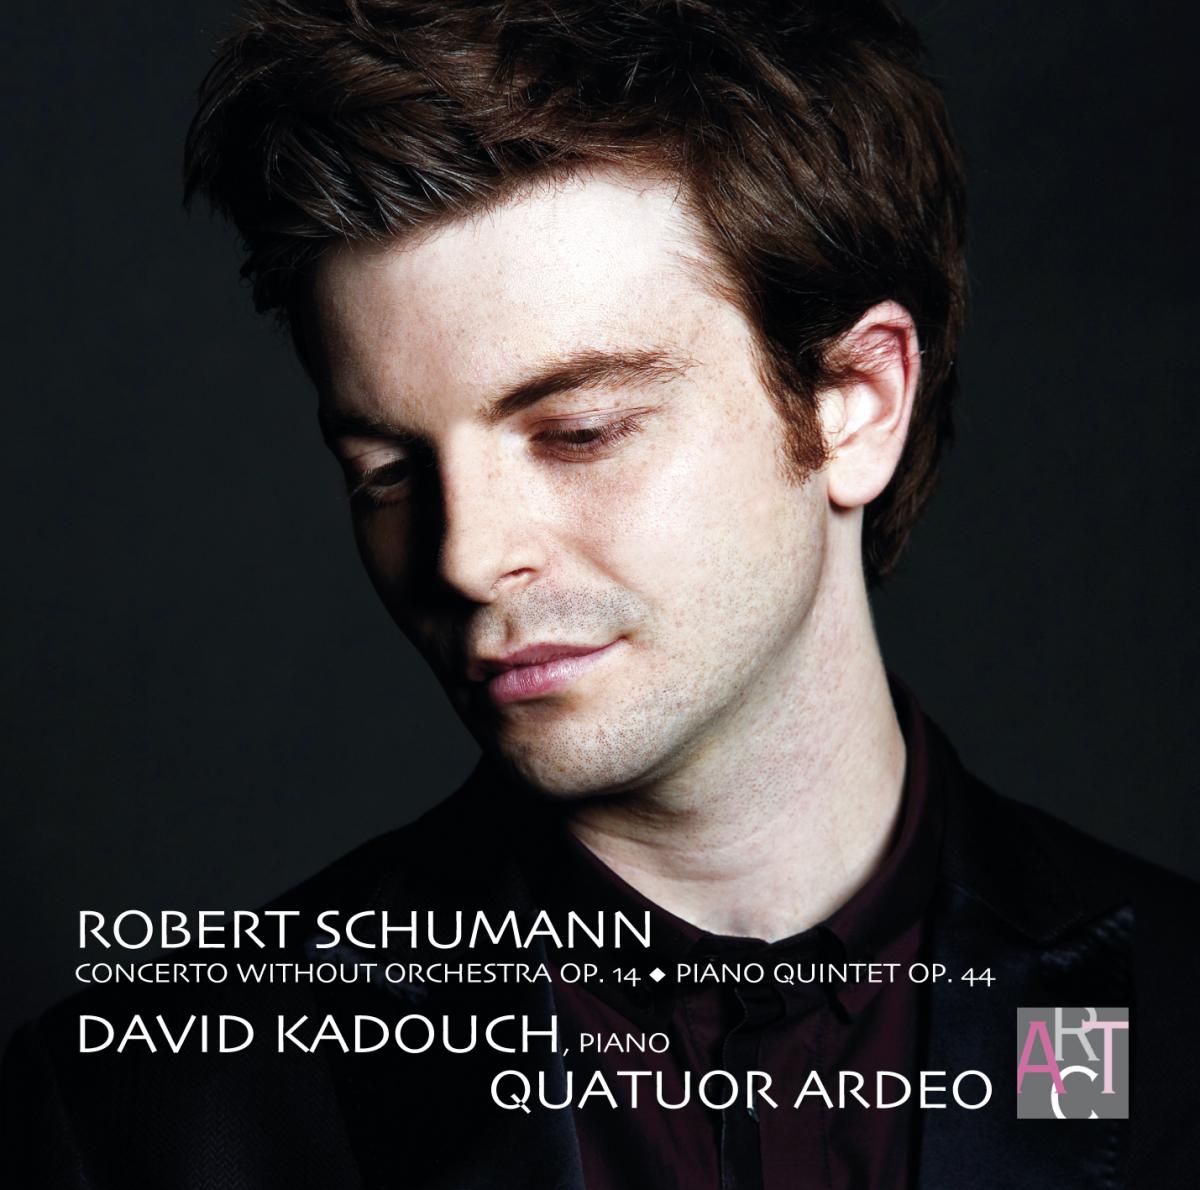 David Kadouch, Quatuor Ardeo AR003